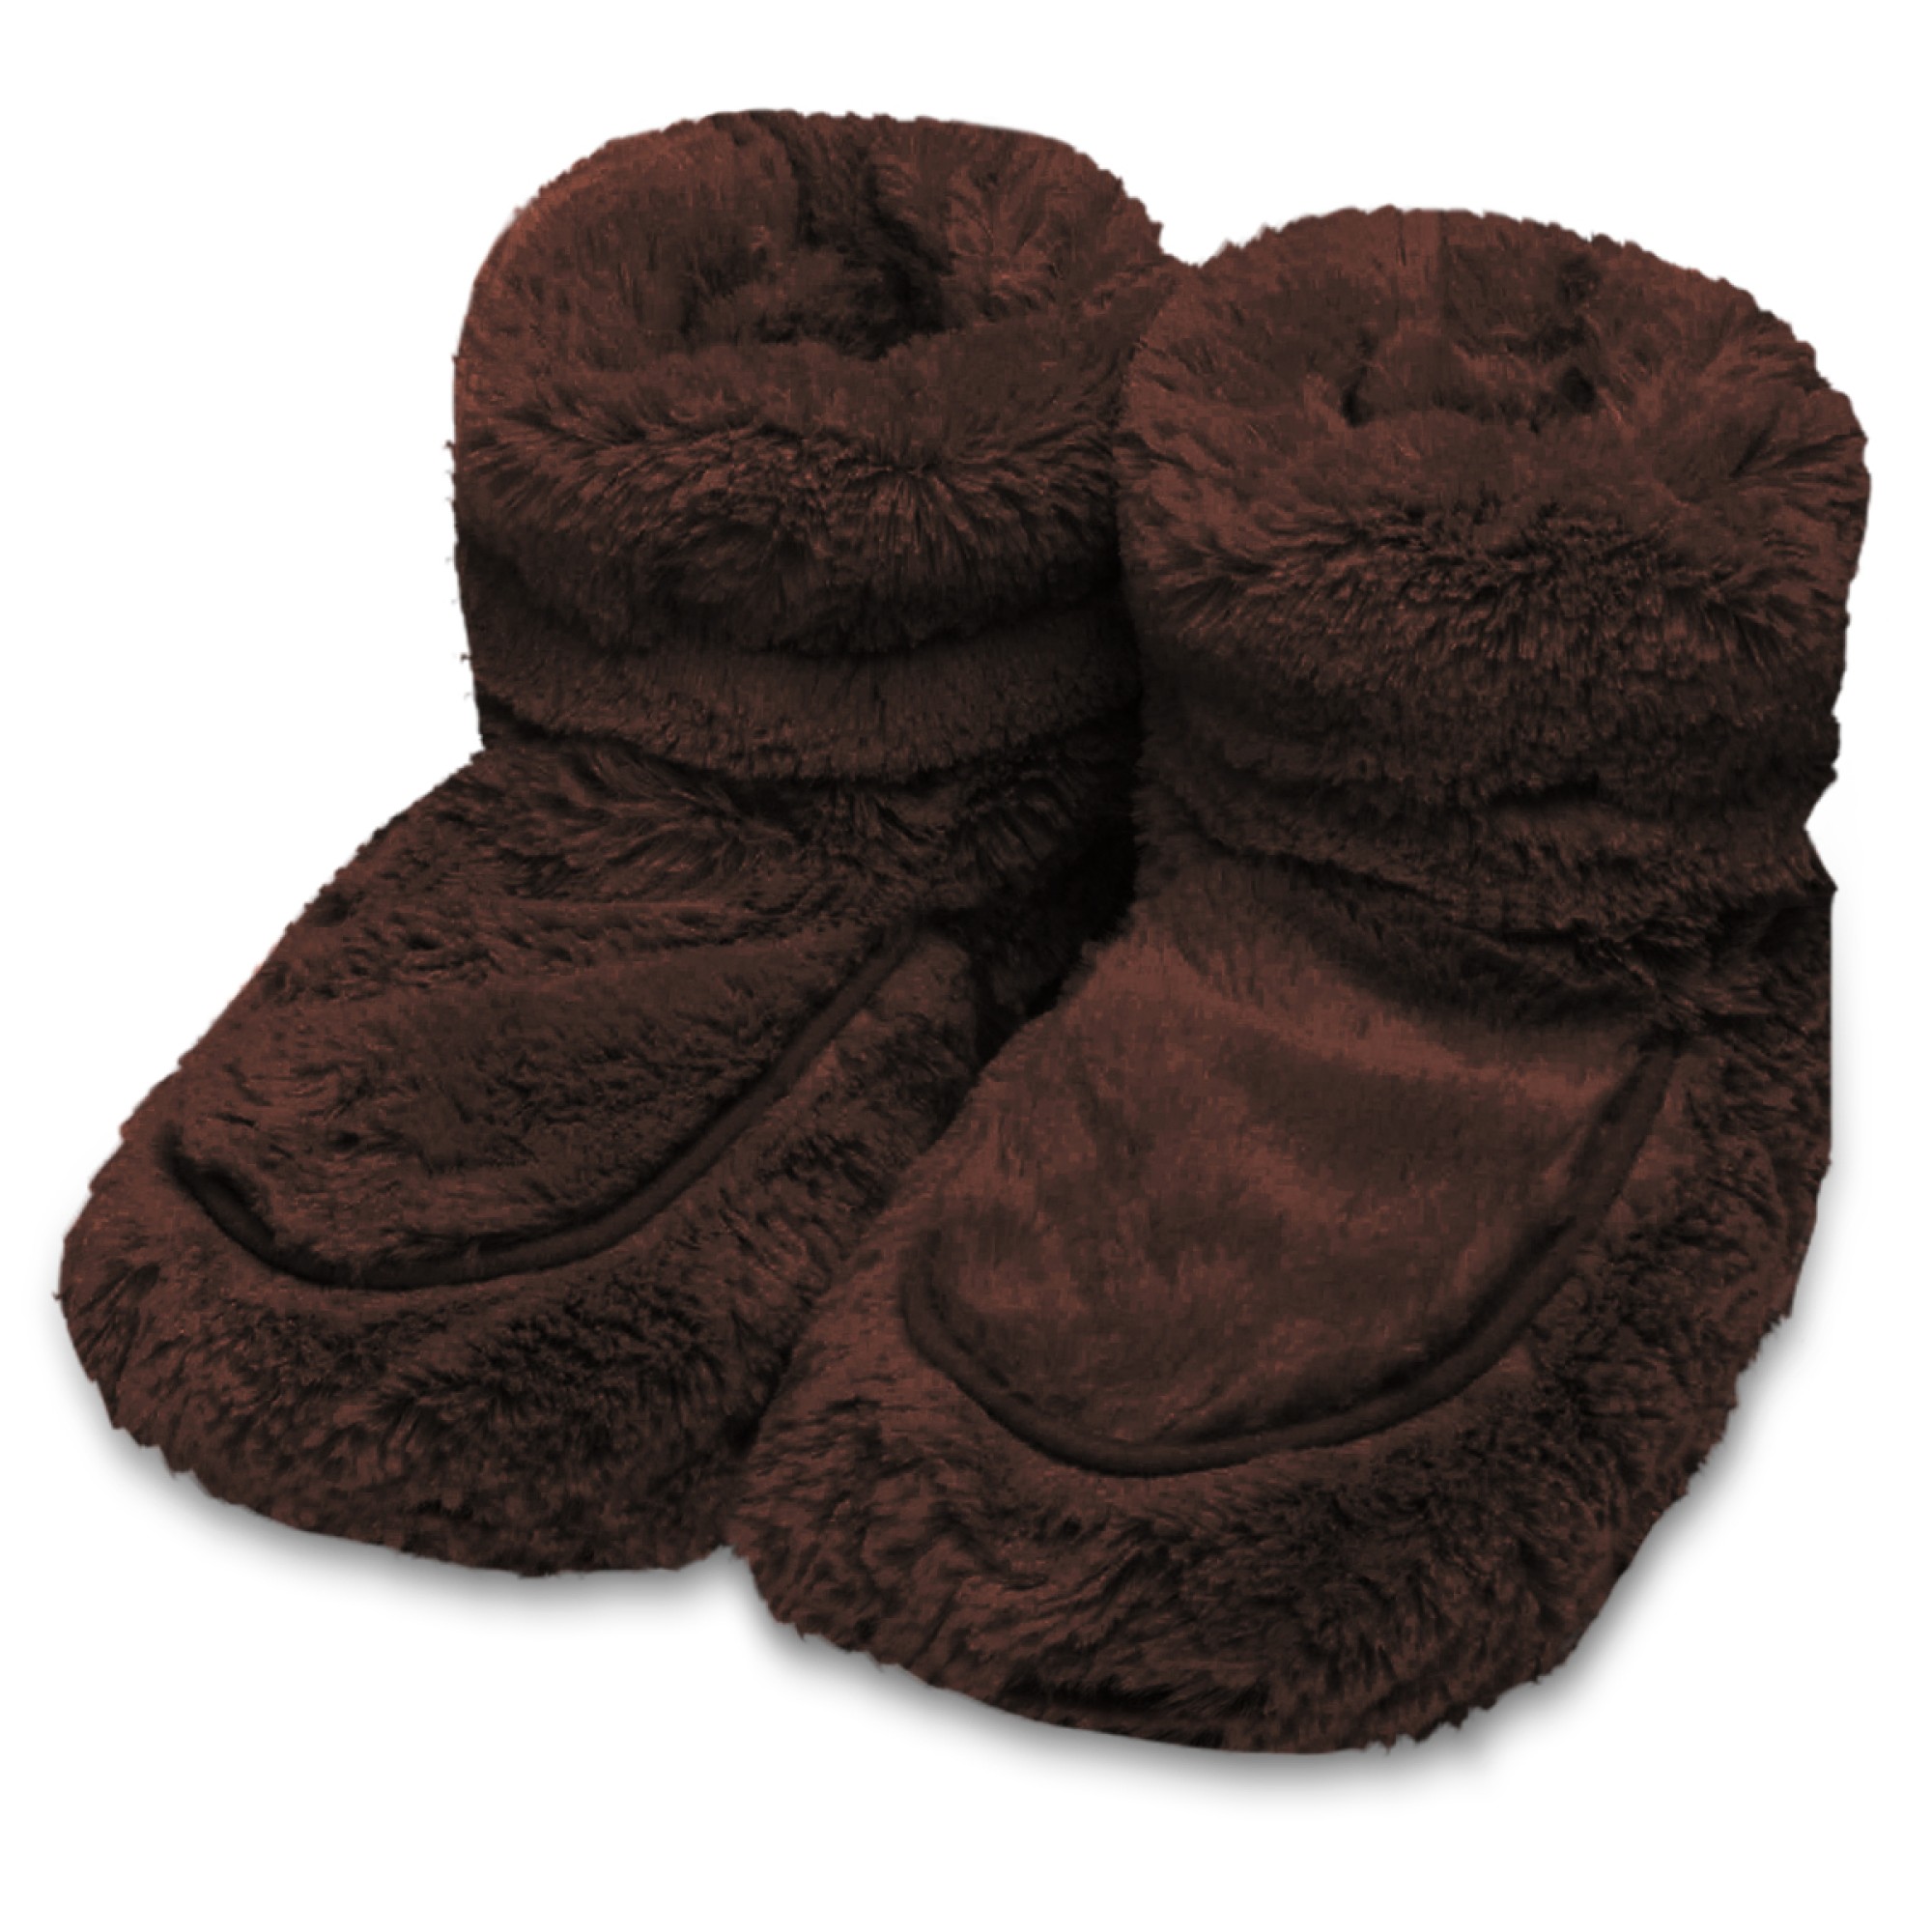 heatable cozy plush boots